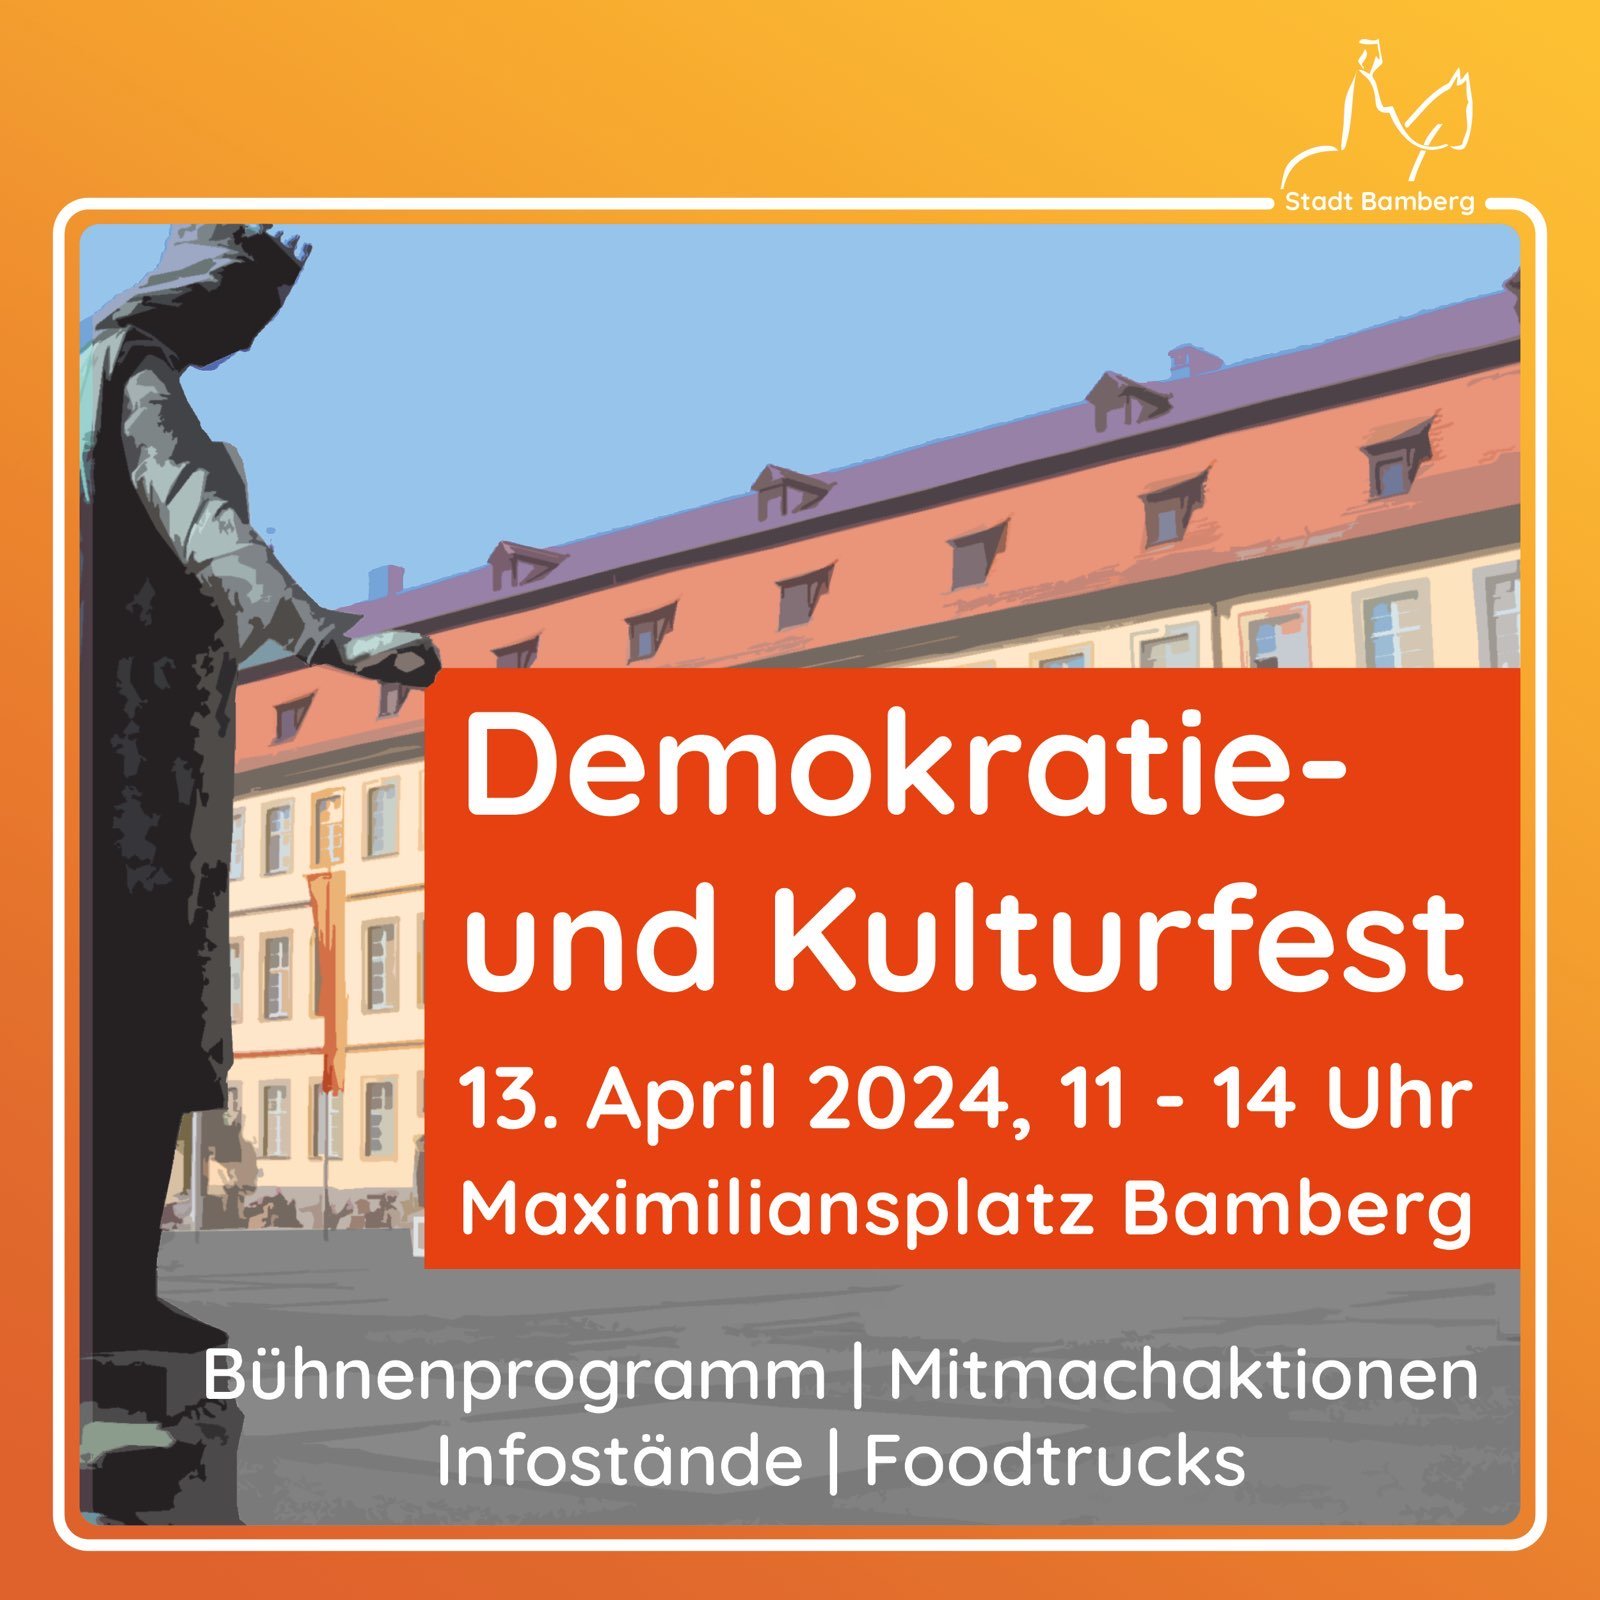 Demokratie- und Kulturfest am 13. April 2024, von 11 bis 14 Uh